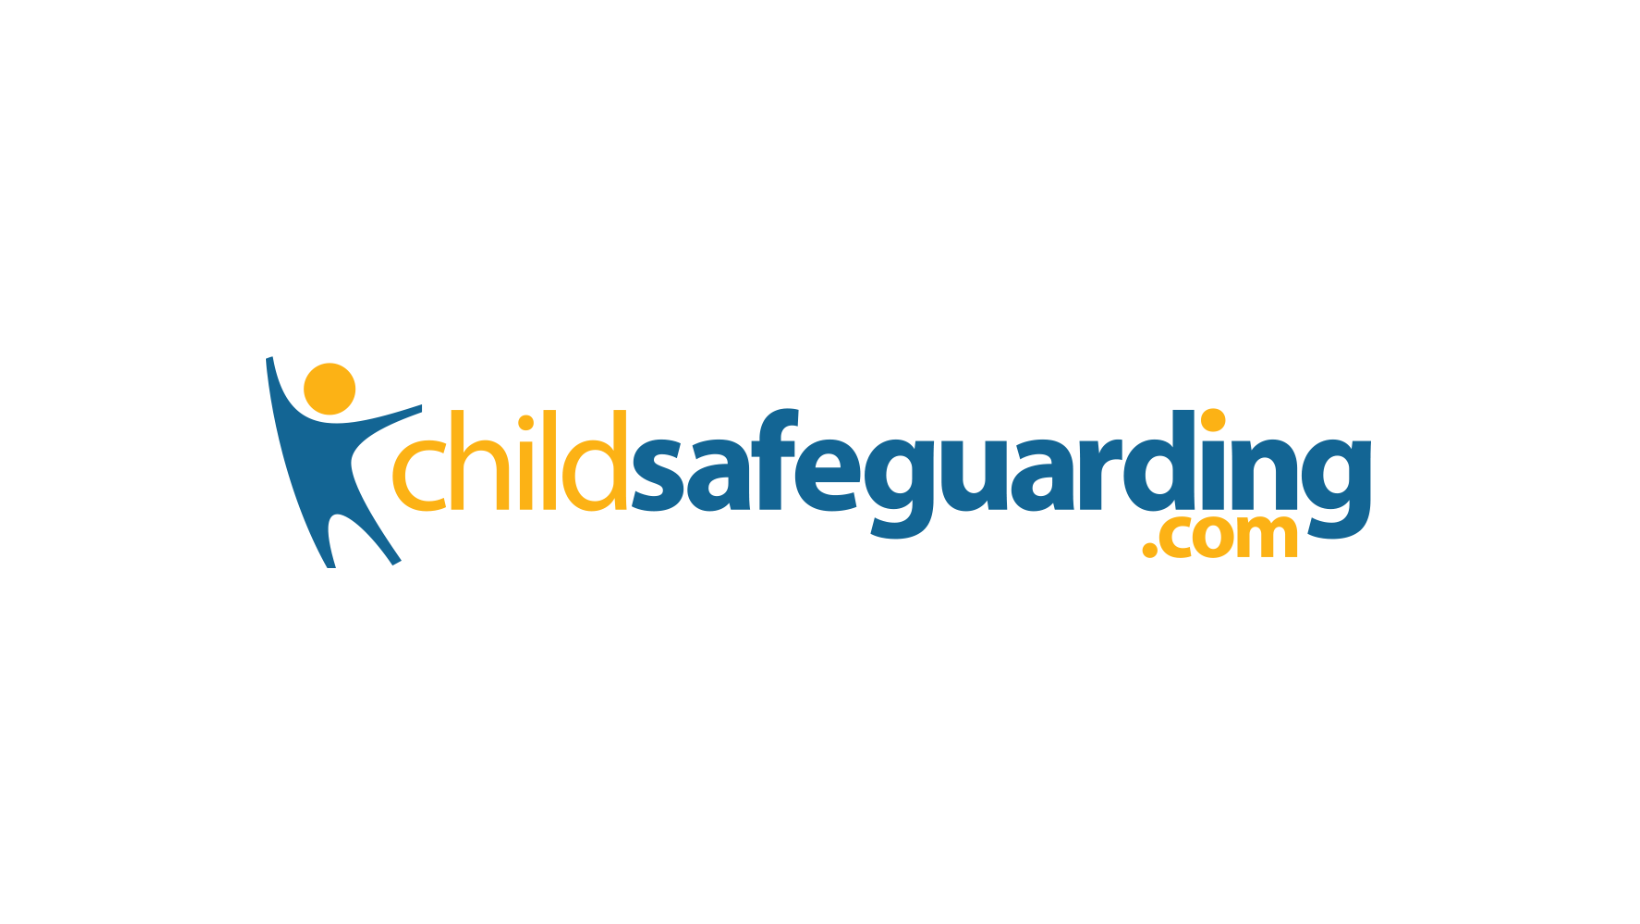 childsafeguarding.com